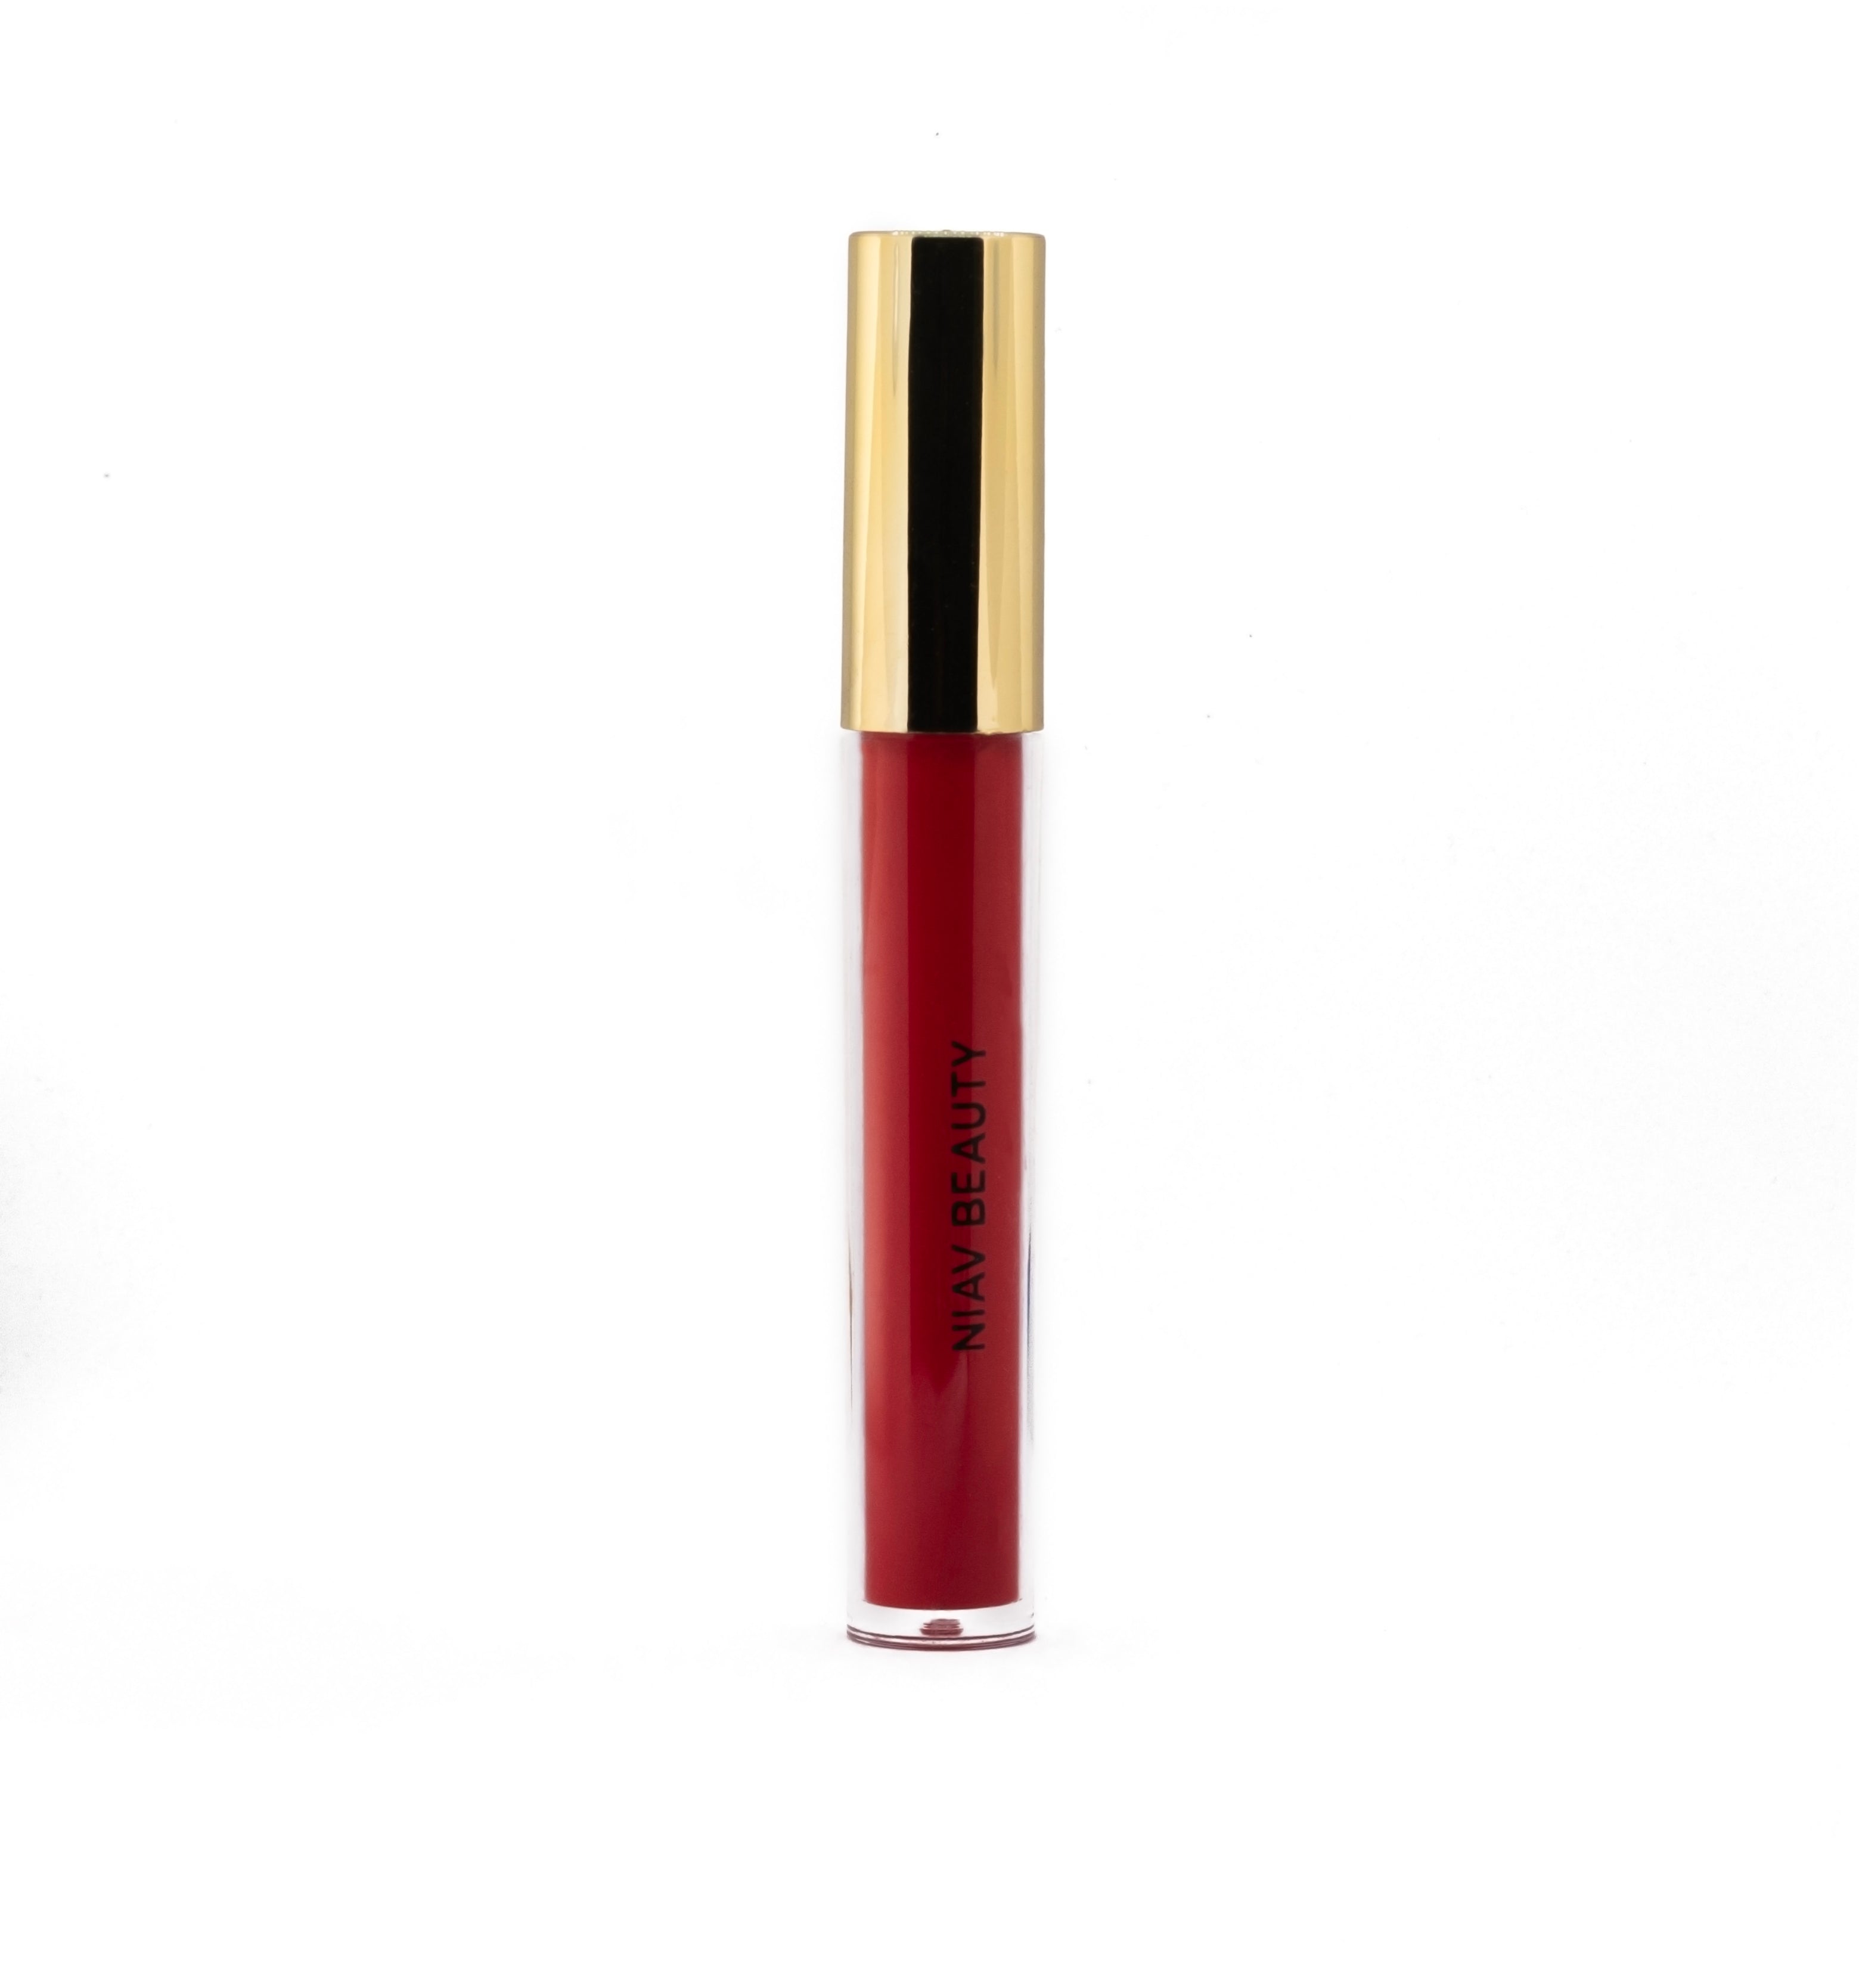 NB Flatter Red velvet Liquid Lipstick